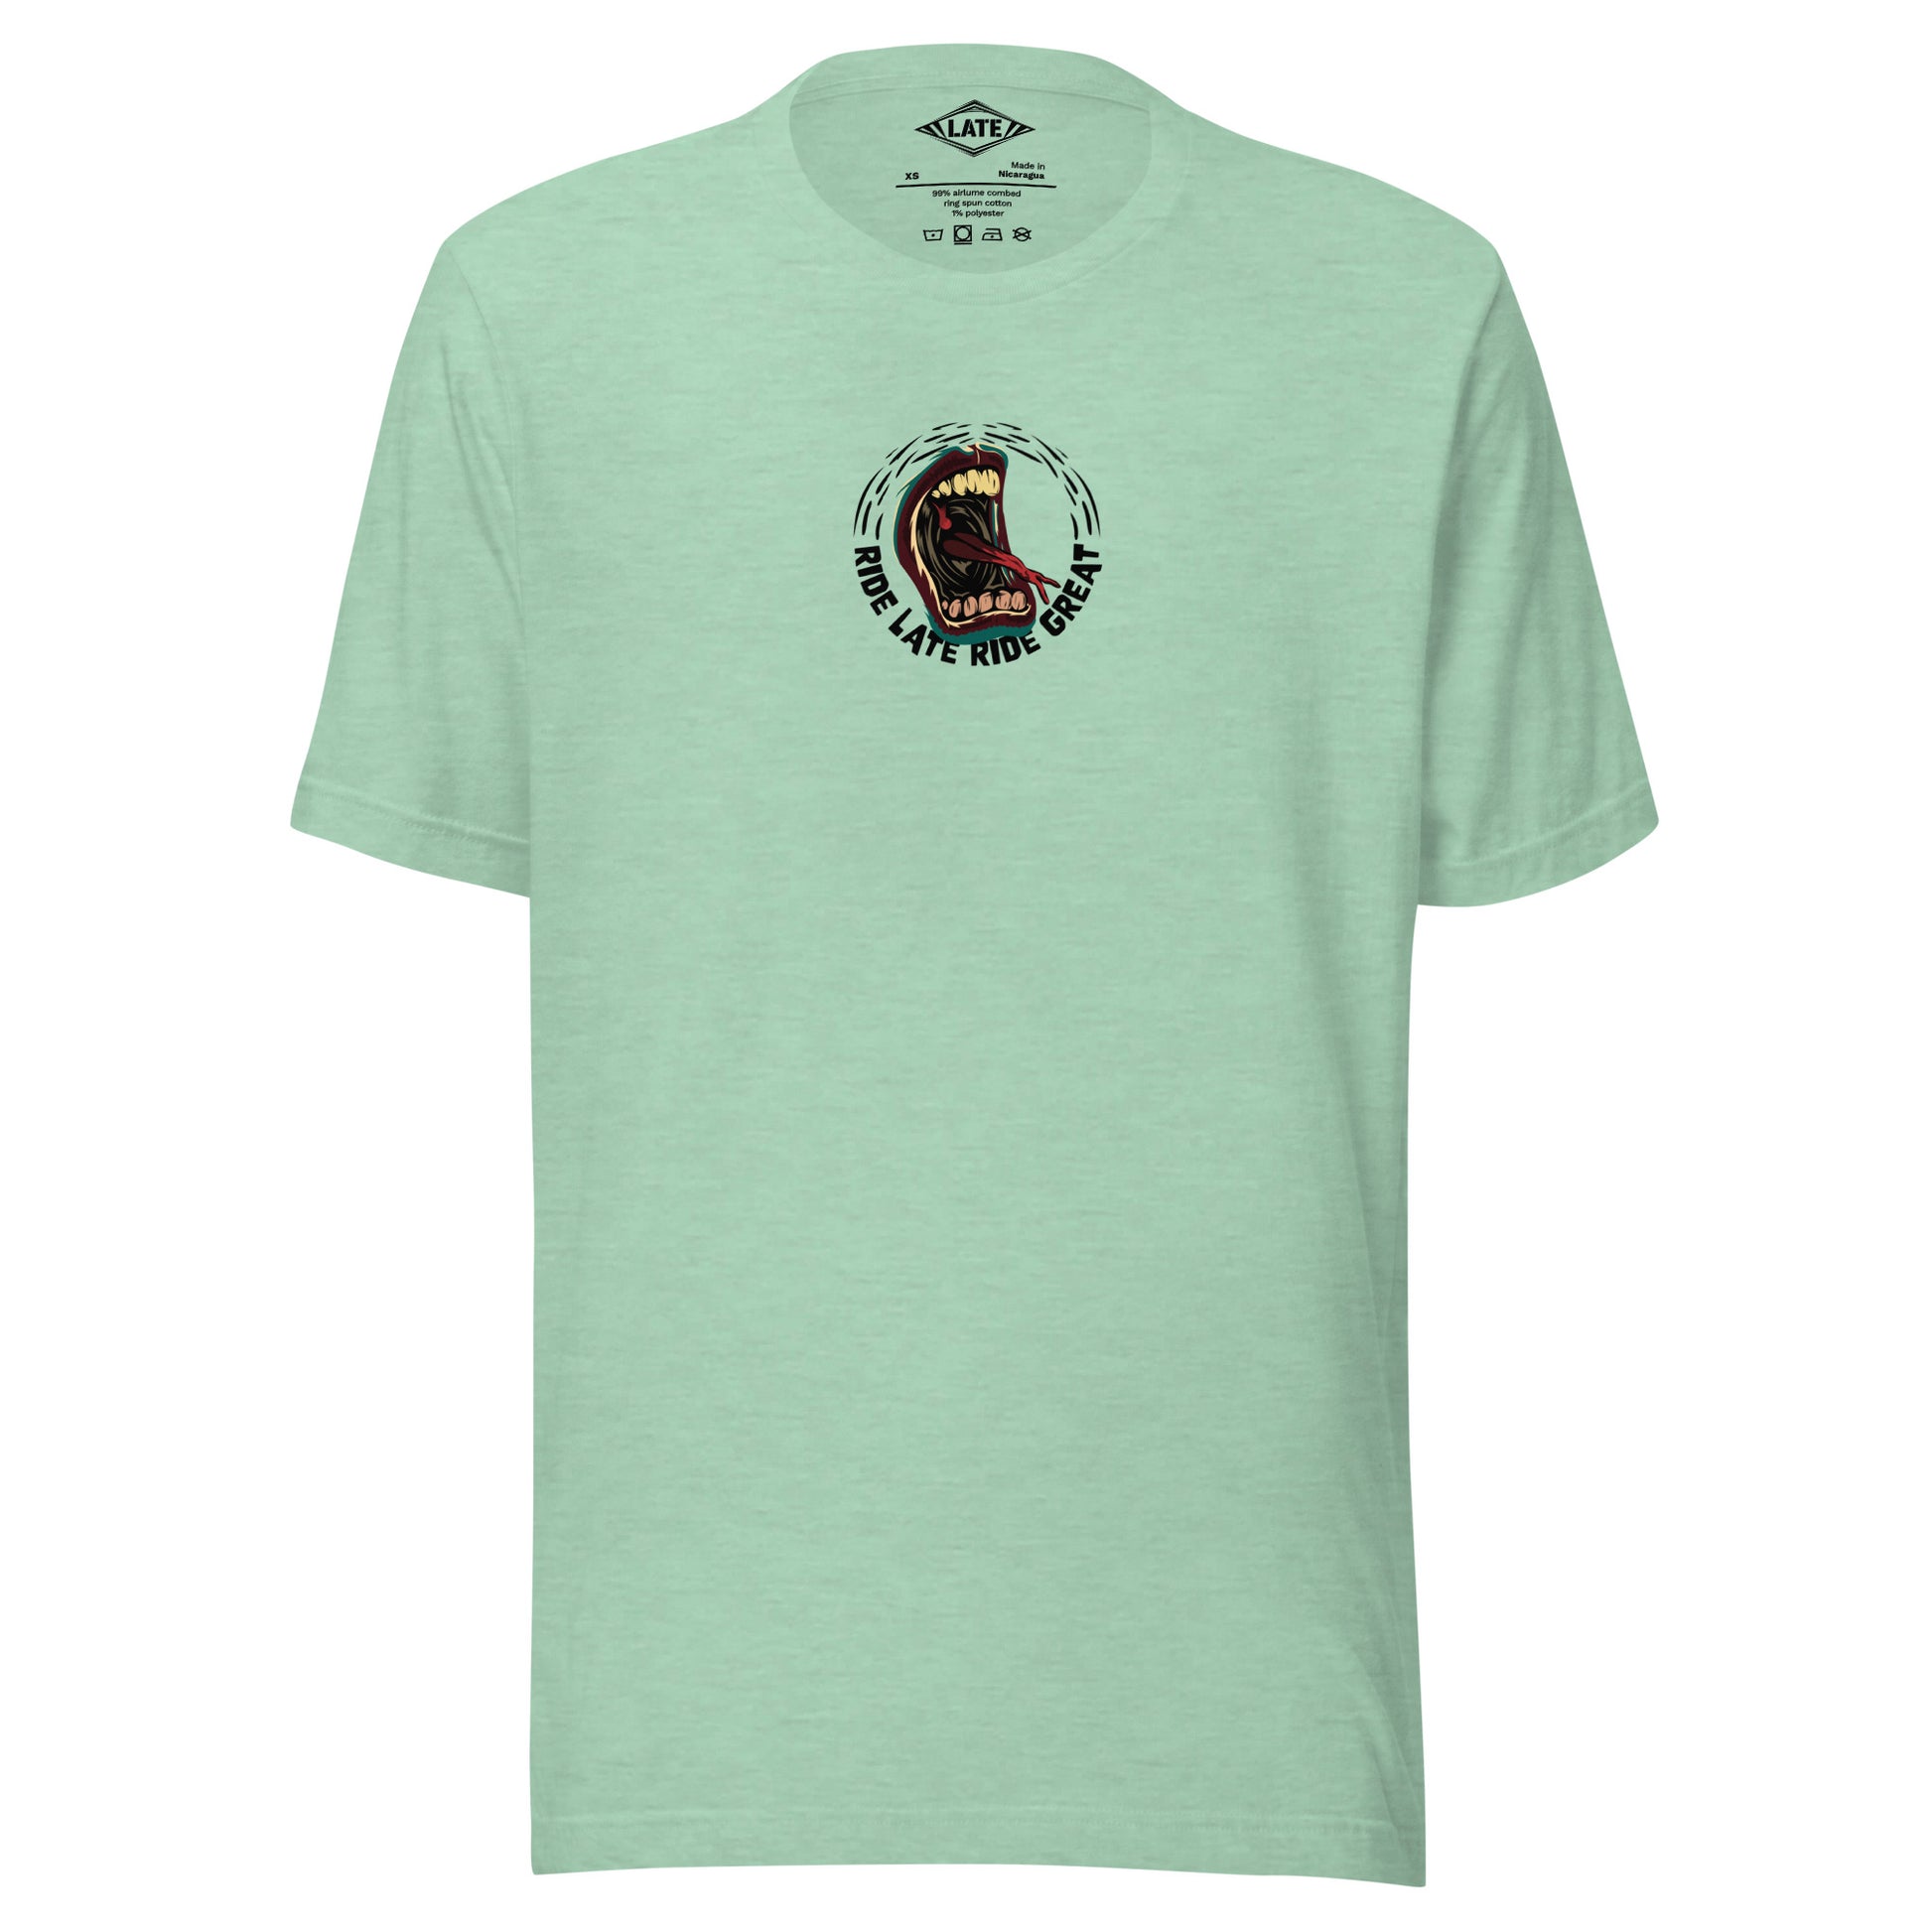 T-Shirt Ride Late Live Great skate style volcom avec un design de bouche qui tire la langue couleur du t-shirt de face unisex heather mint